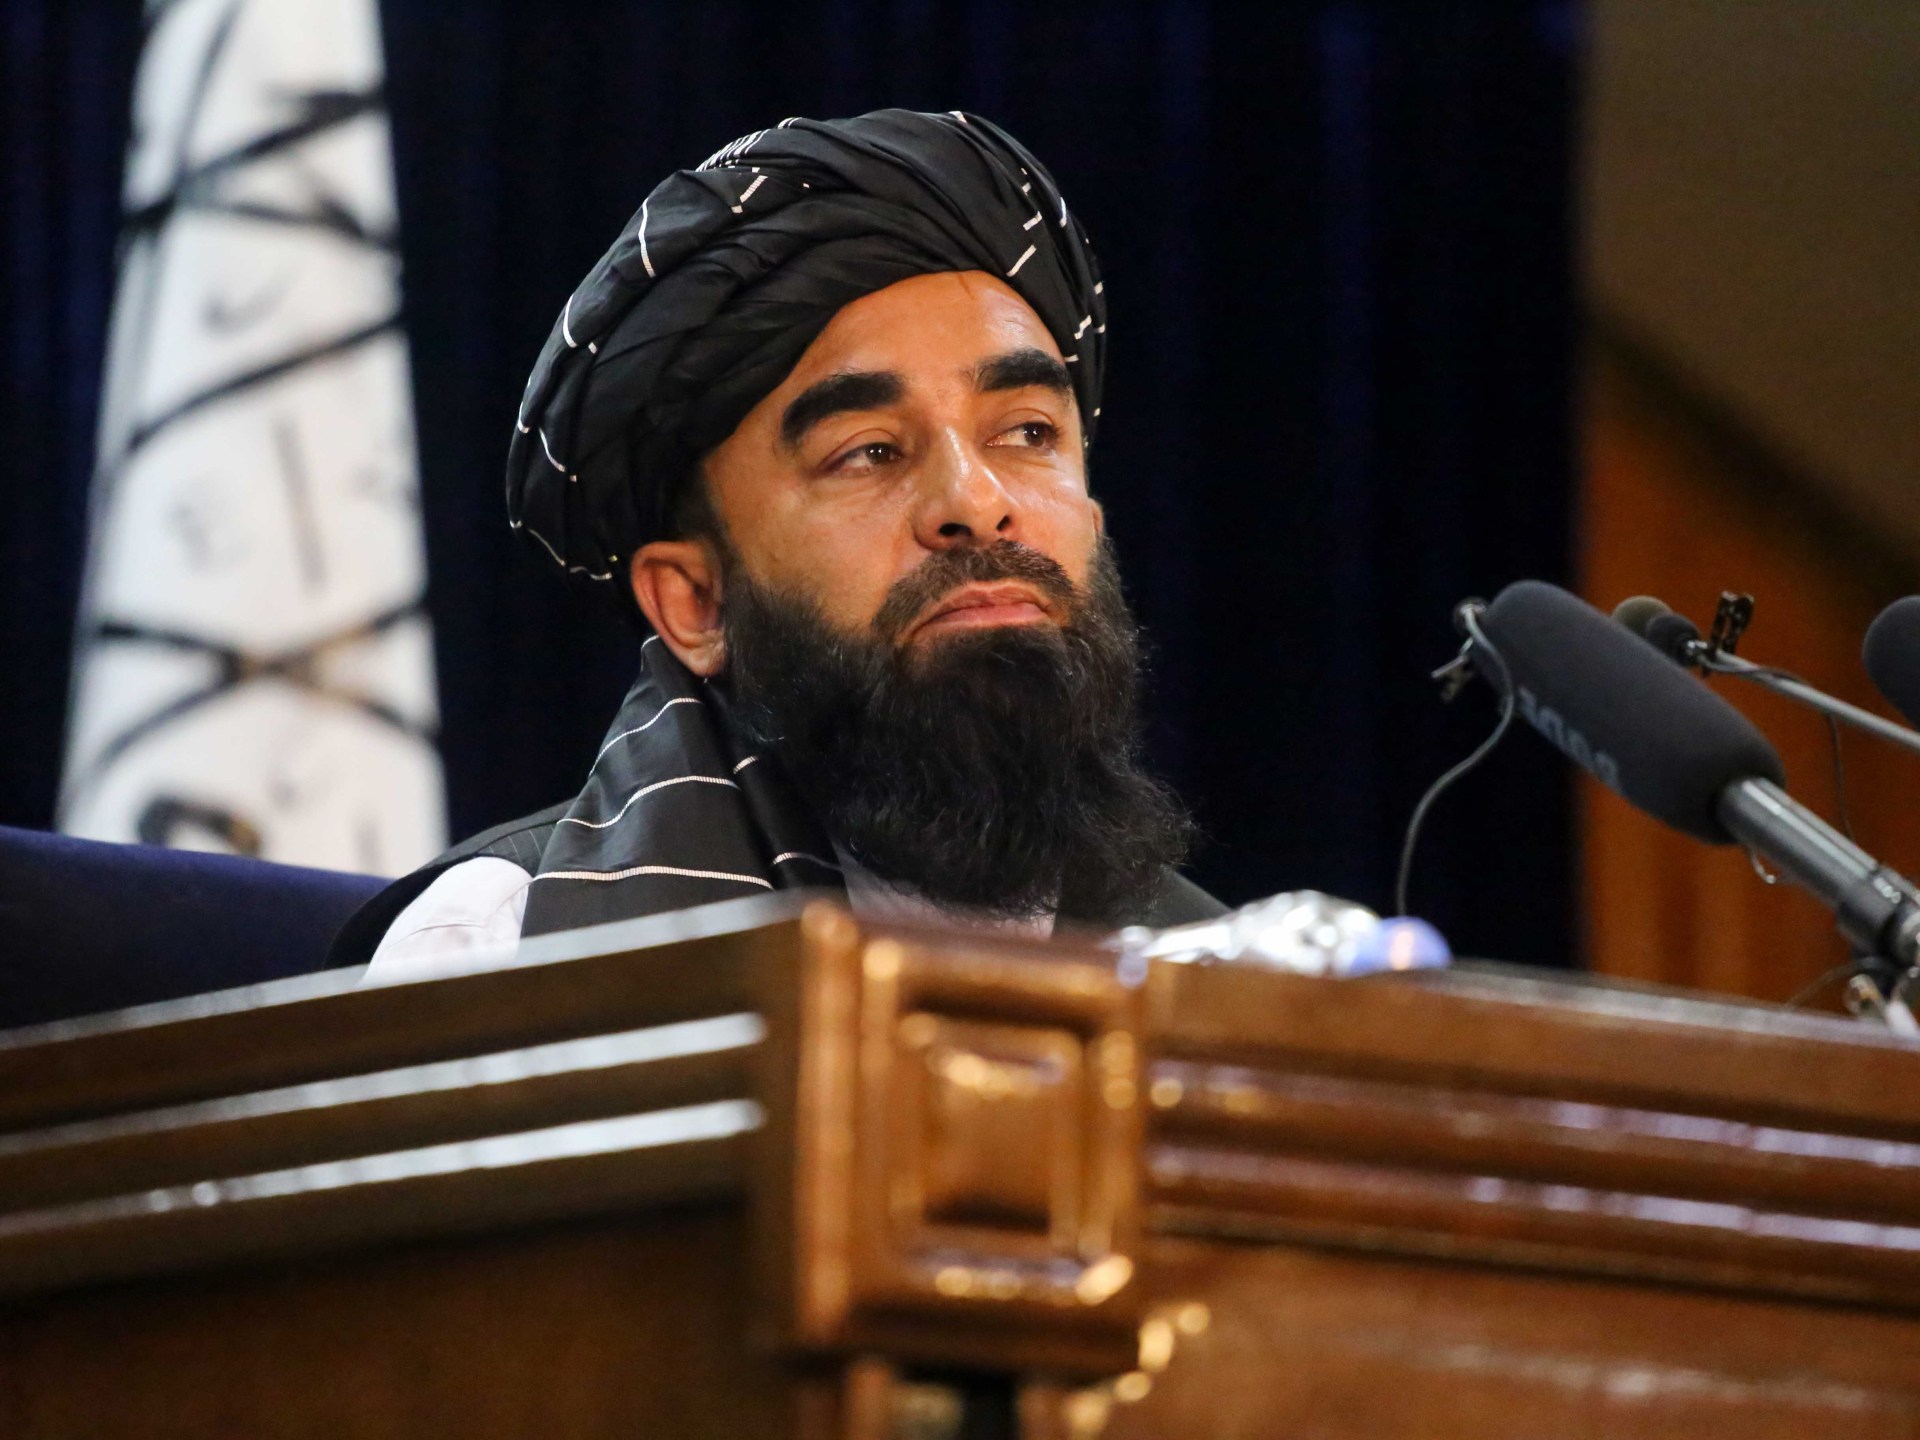 Taliban meretas laporan AS tentang meningkatnya ancaman di Afghanistan |  Berita